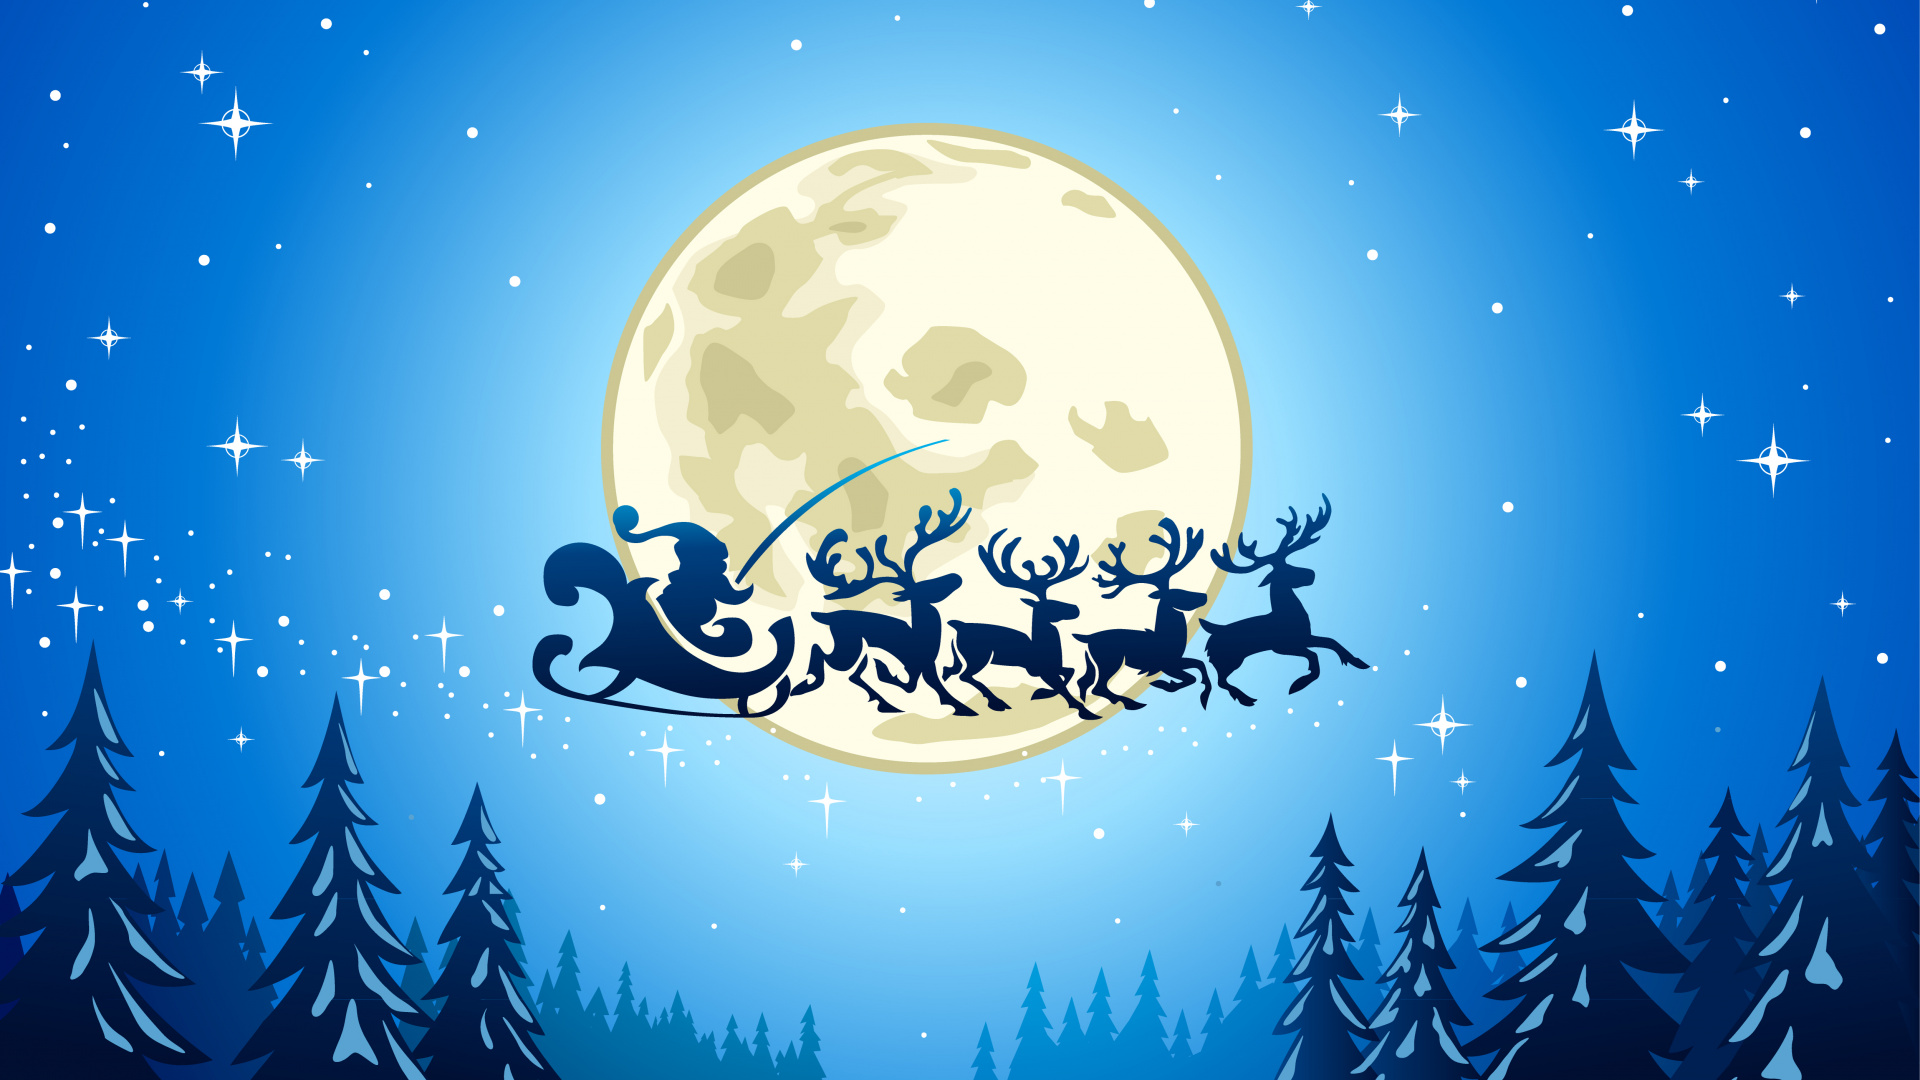 Weihnachten, Weihnachtsmann, Illustration, Mond, Ded Moroz. Wallpaper in 1920x1080 Resolution